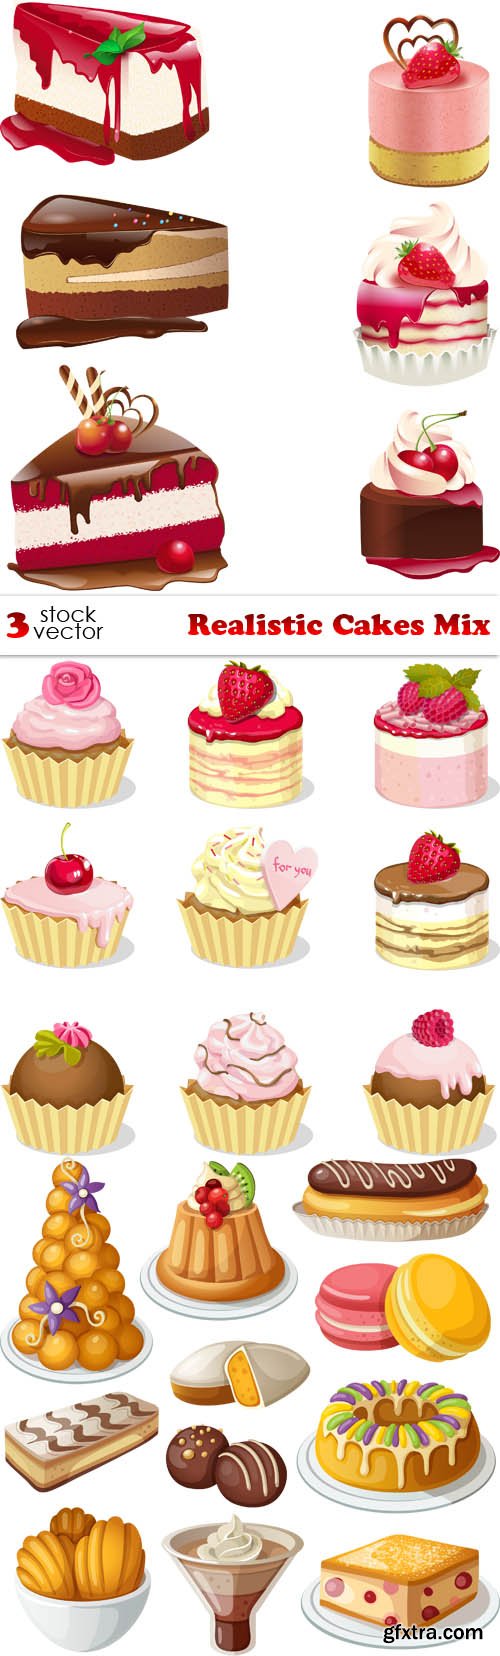 Vectors - Realistic Cakes Mix